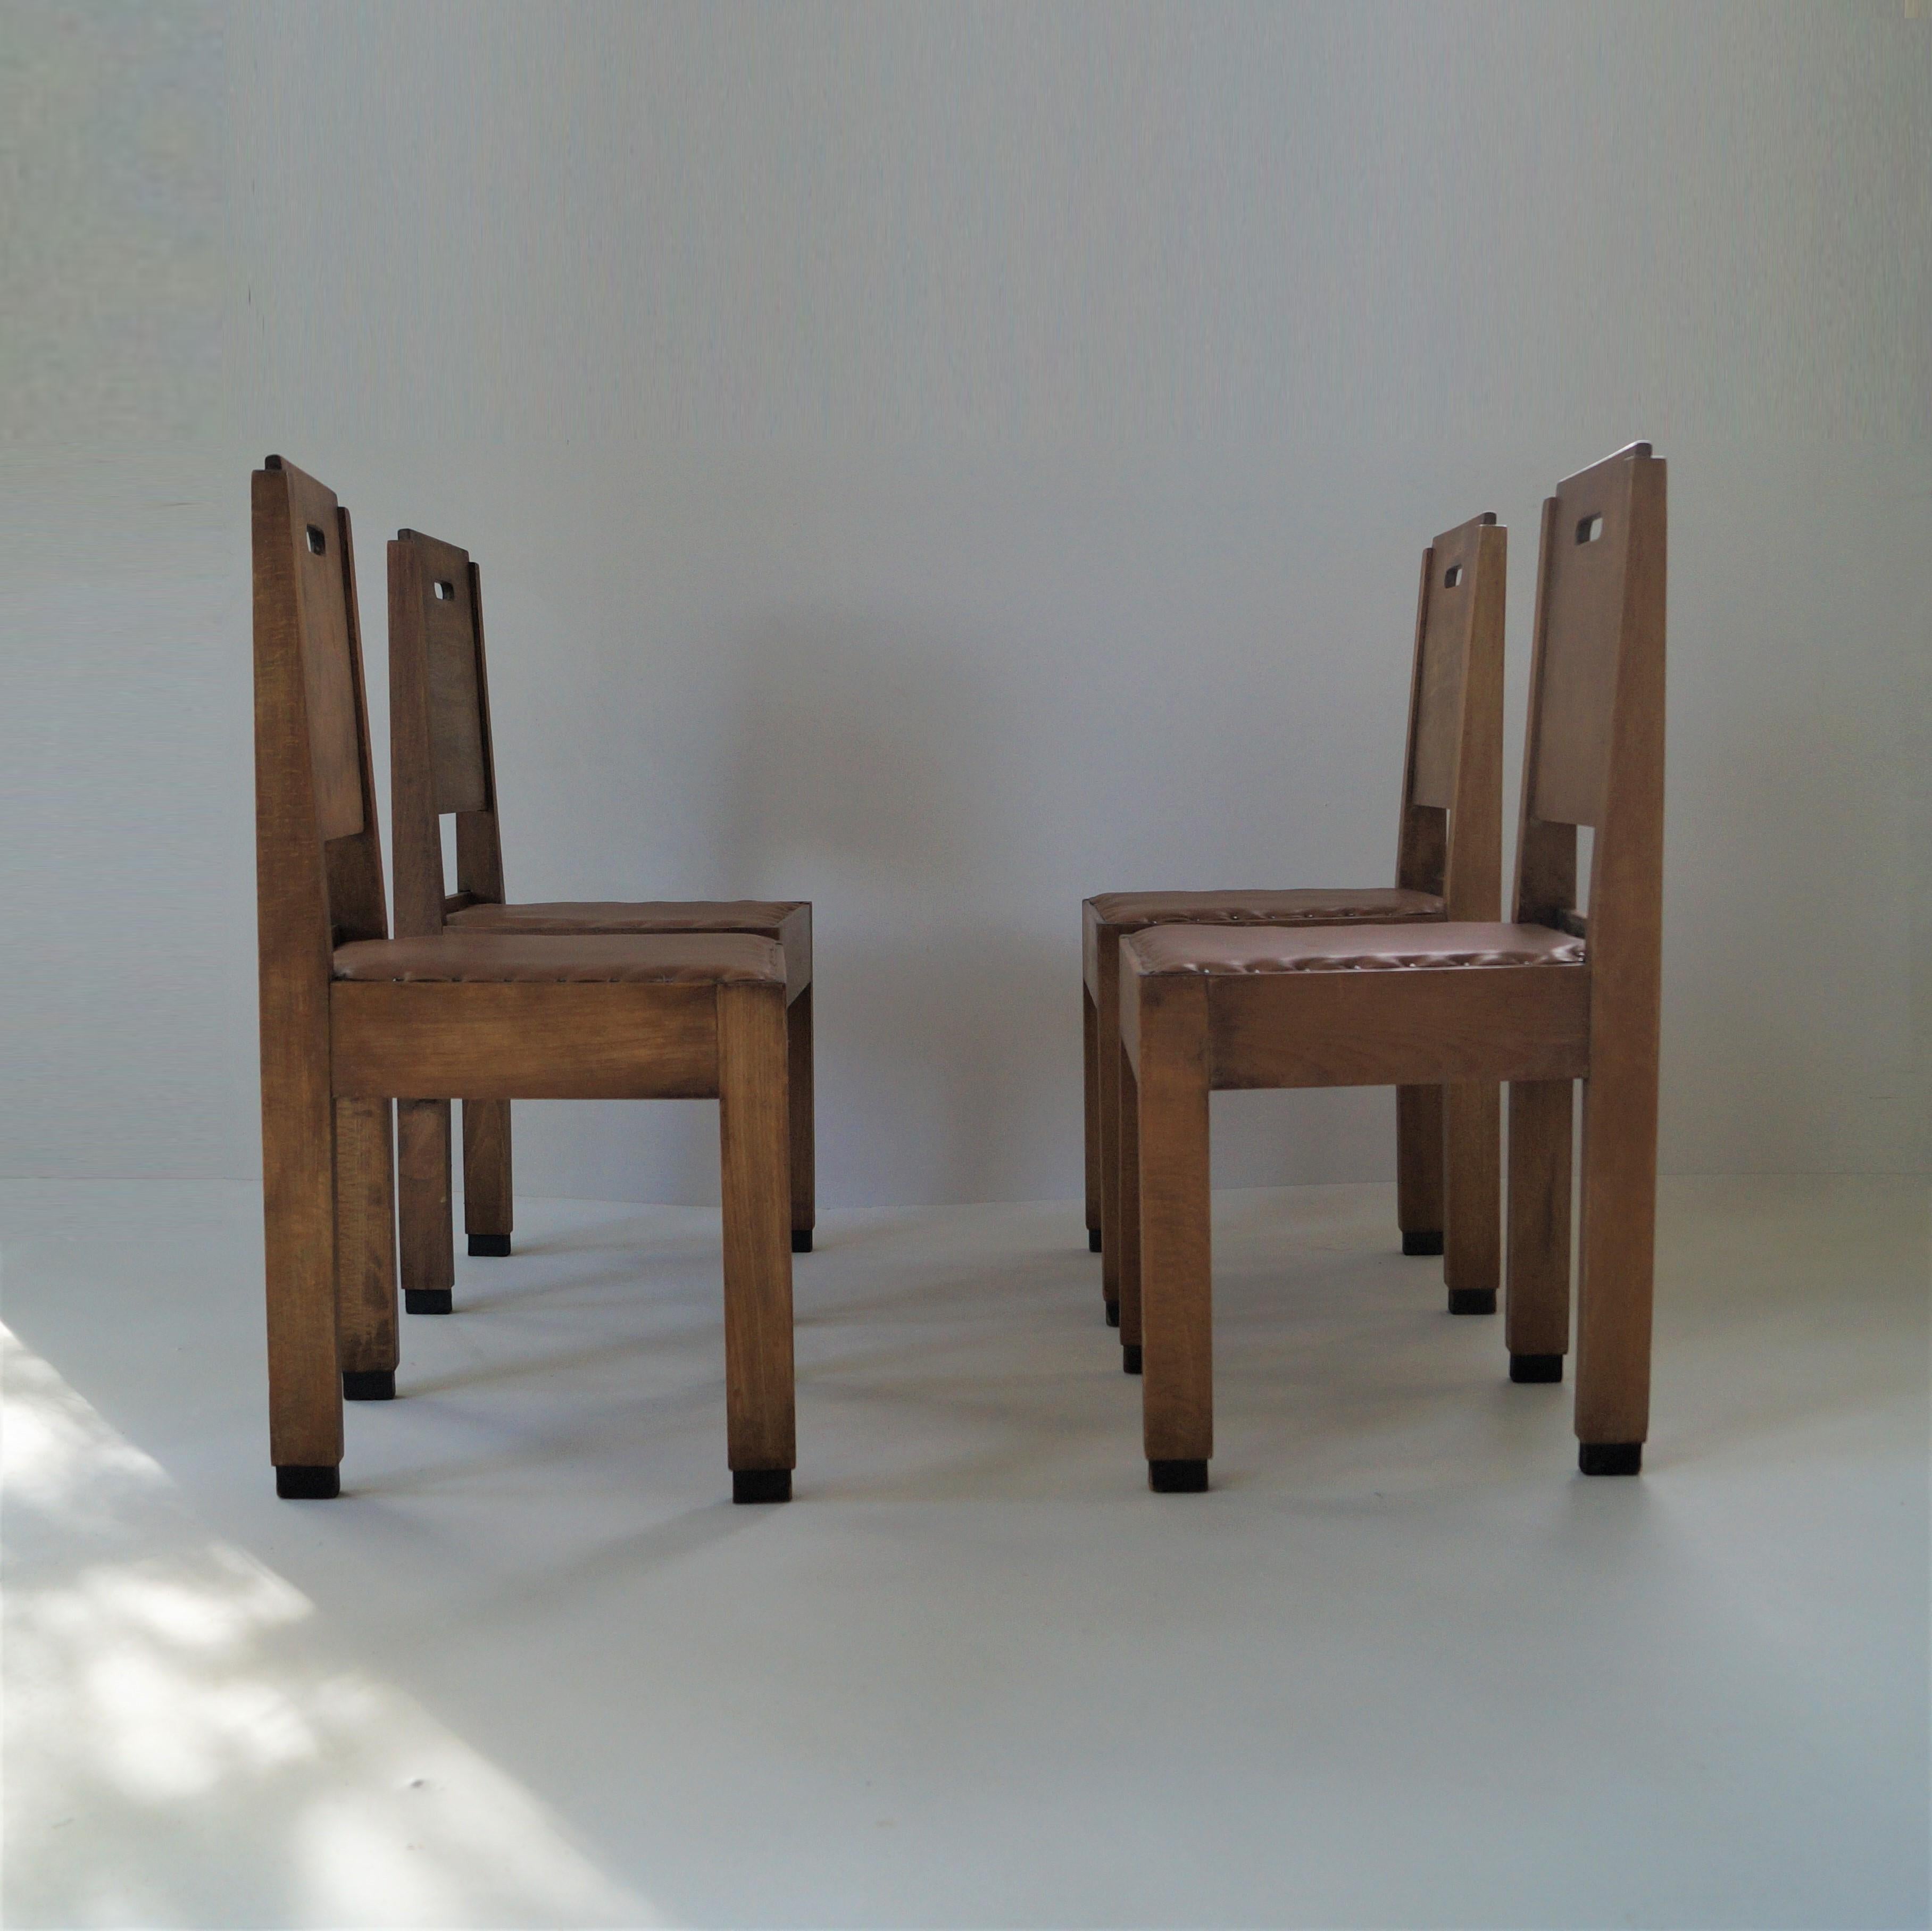 Dutch Art Deco De Stijl/Haagse School set of chairs, 1920s In Good Condition For Sale In EVERDINGEN, NL